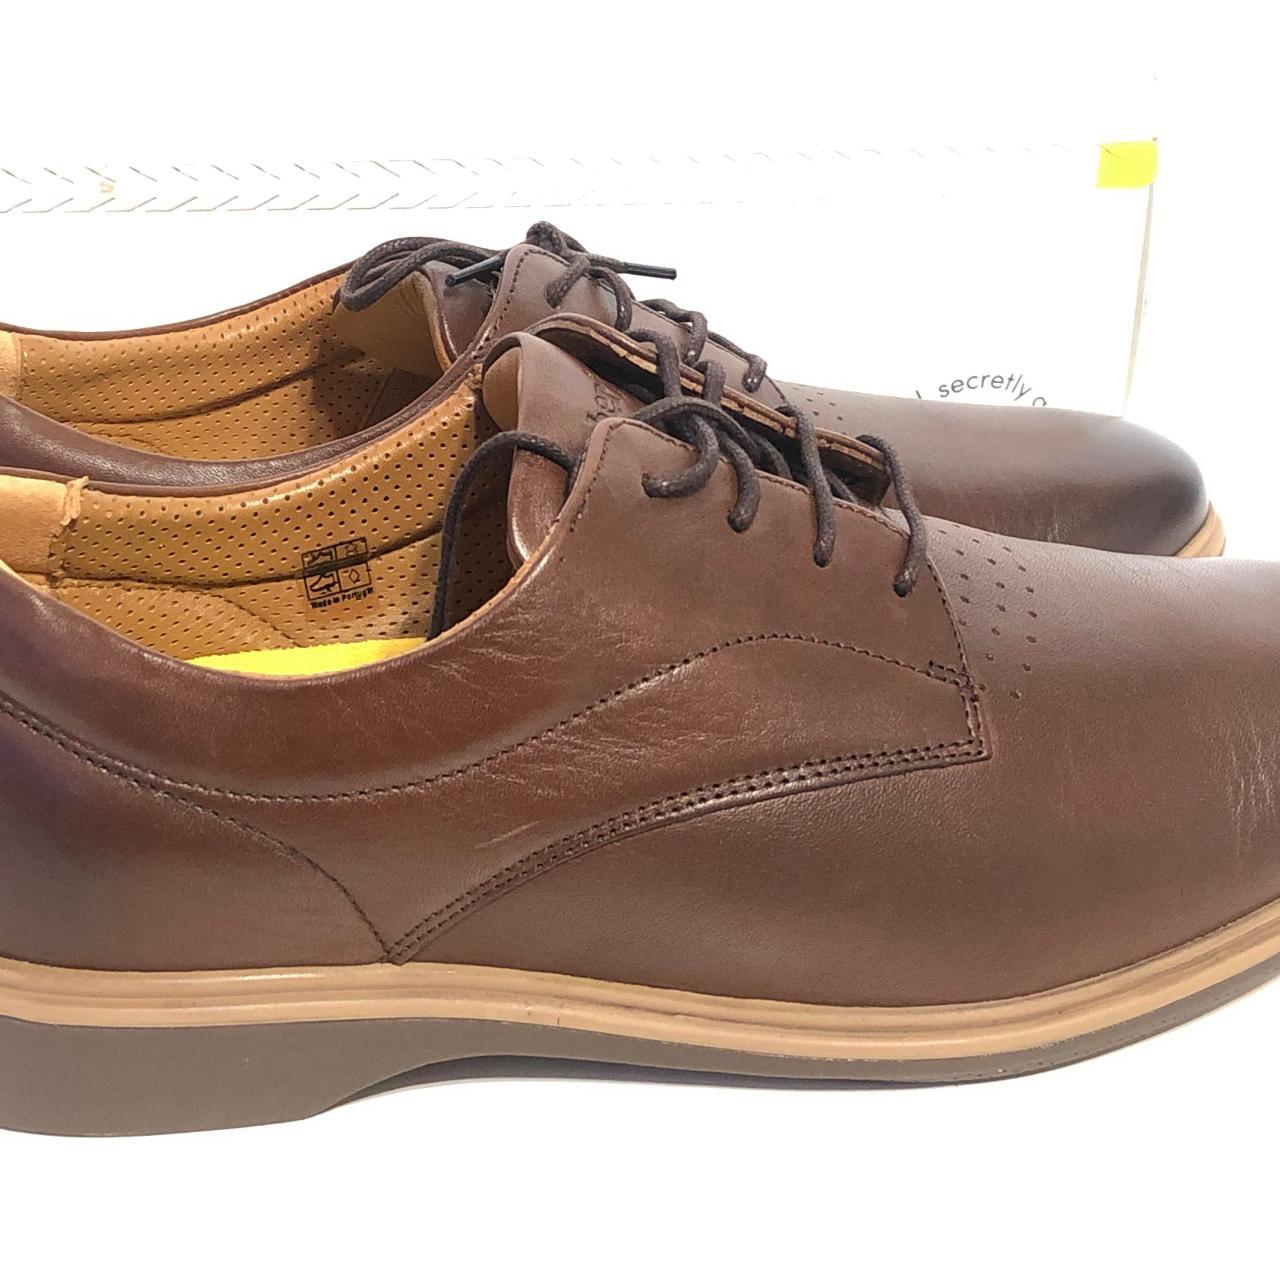 Amberjack The Original Shoes - Brown - 7